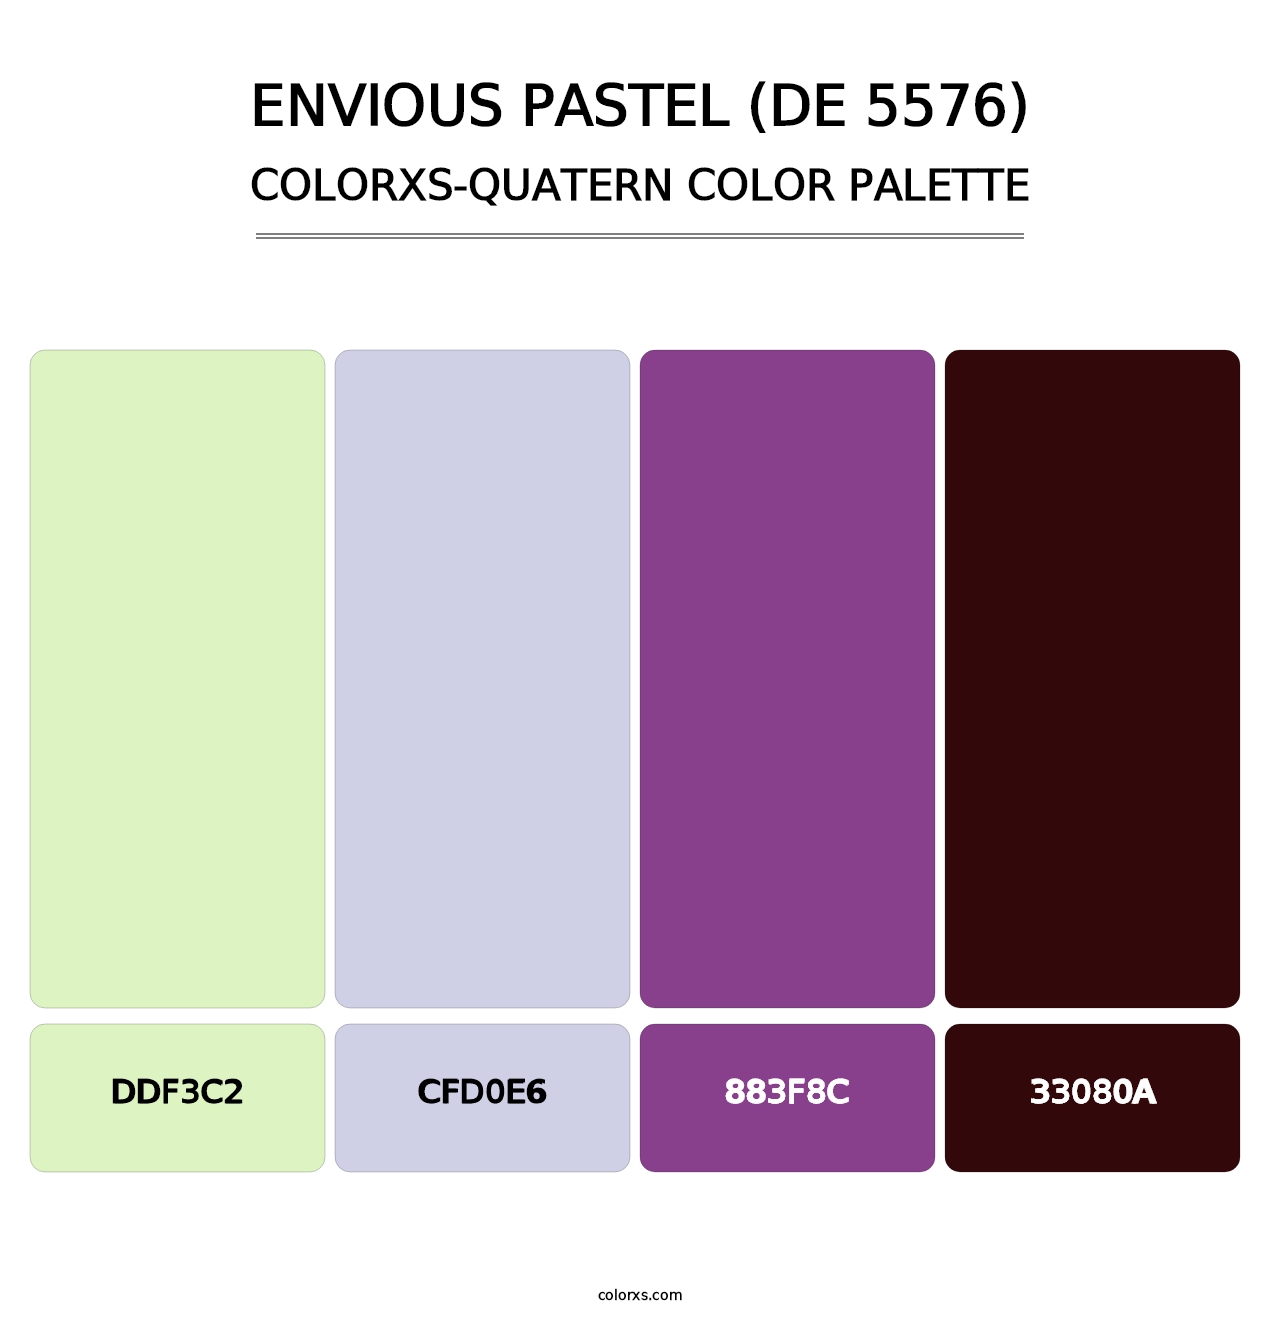 Envious Pastel (DE 5576) - Colorxs Quatern Palette